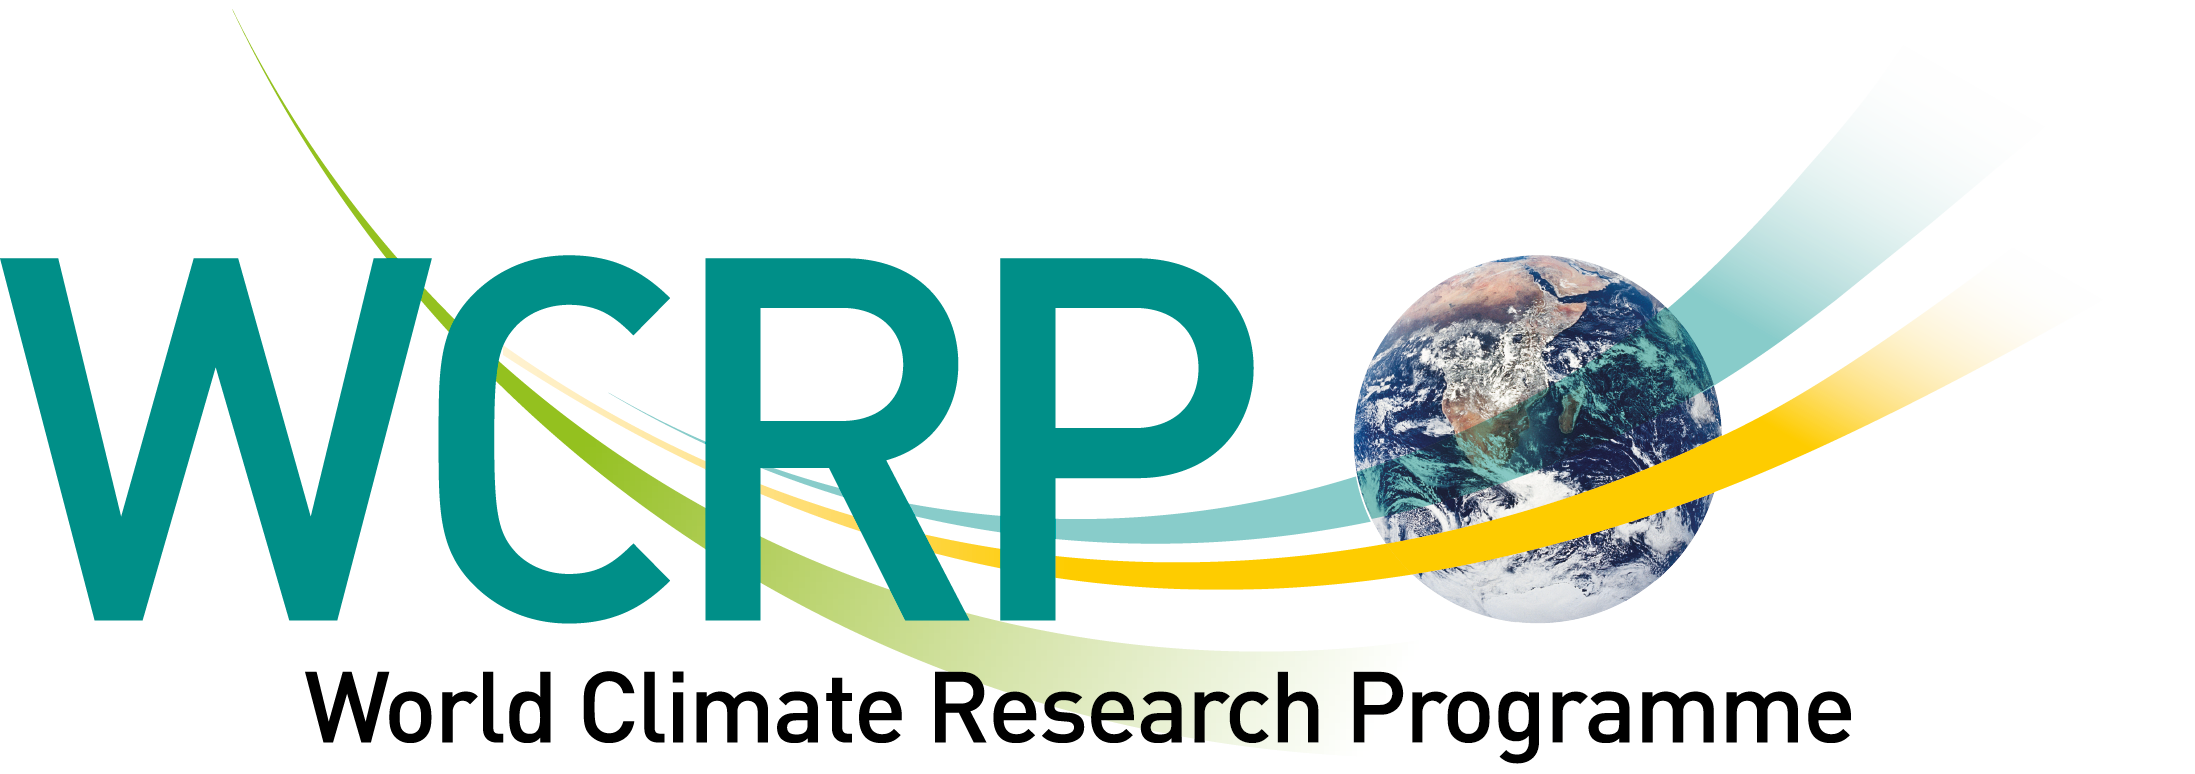 WCRP logo original ext arc